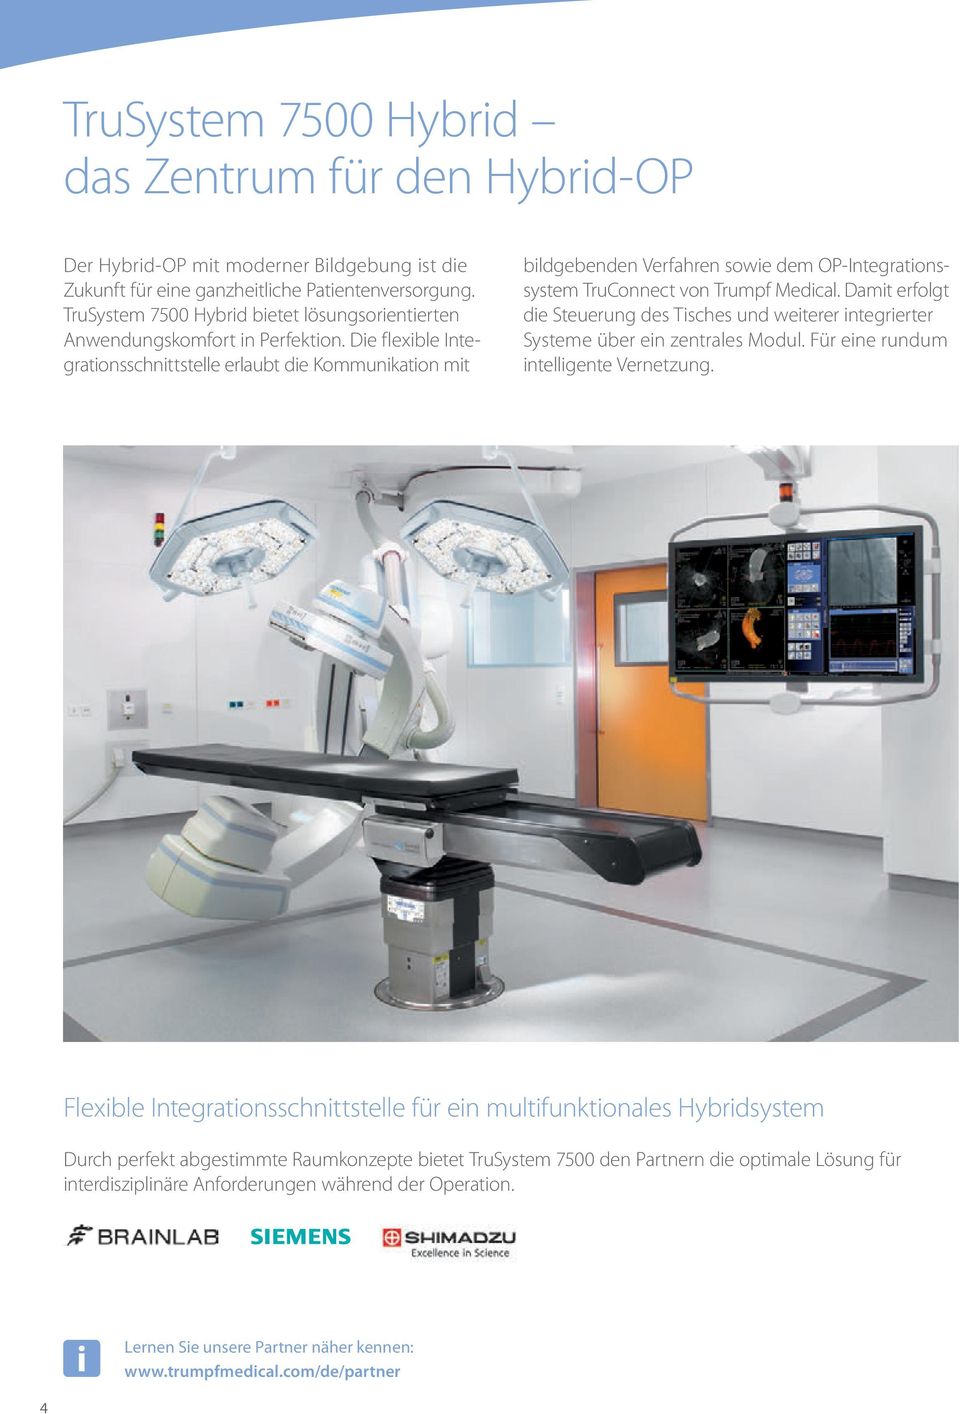 Die flexible Integrationsschnittstelle erlaubt die Kommunikation mit bildgebenden Verfahren sowie dem OP-Integrationssystem TruConnect von Trumpf Medical.